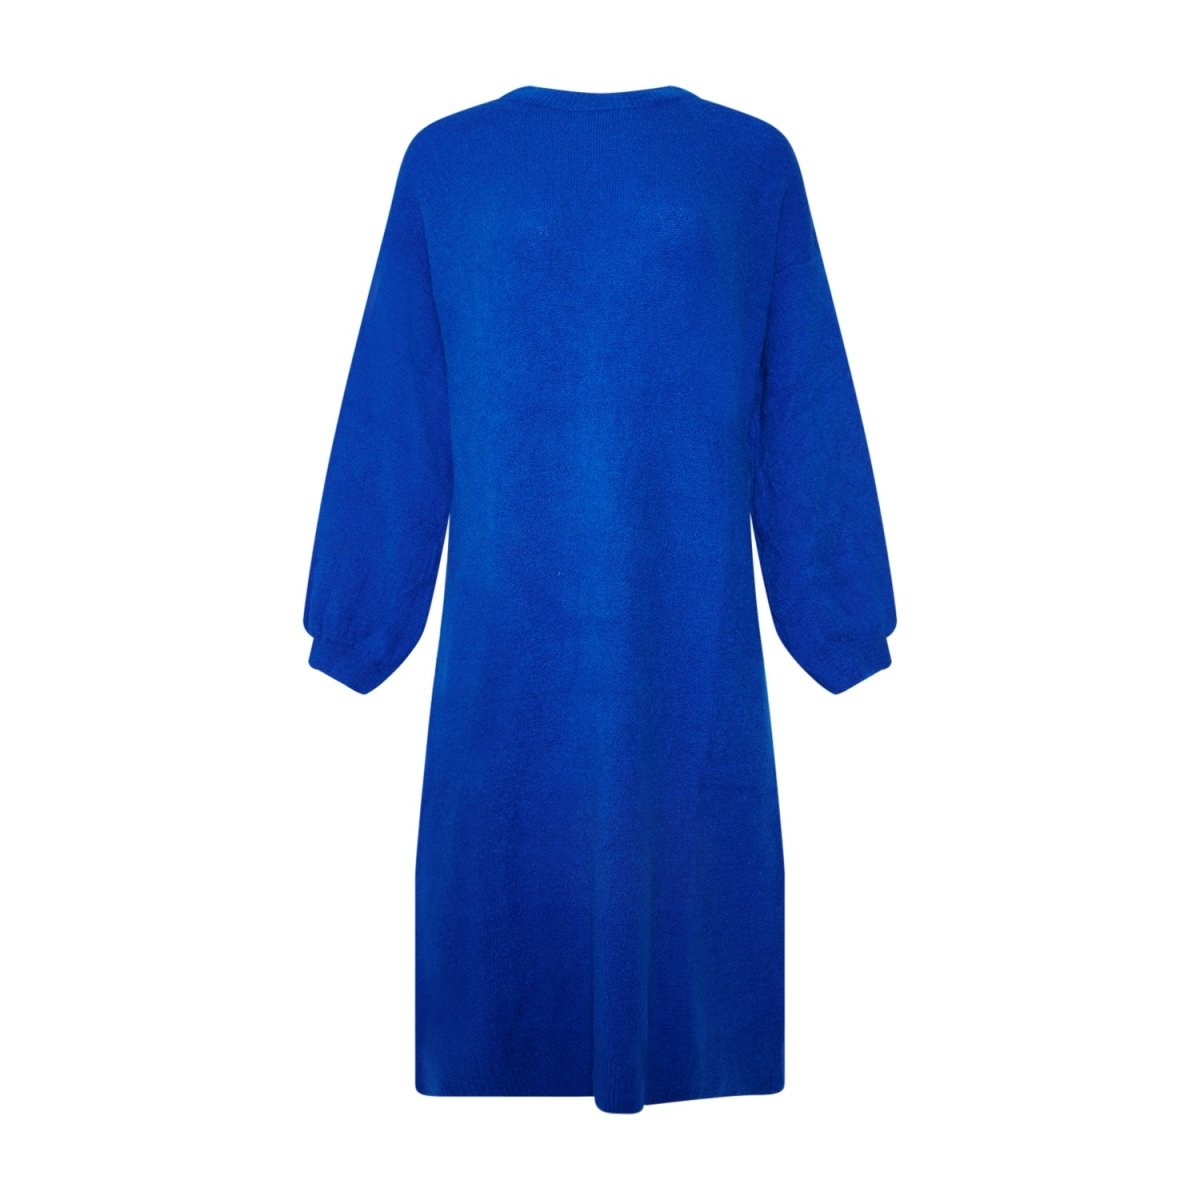 Se Penn Knit Dress - Royal Blue XS/S hos Diversita.dk